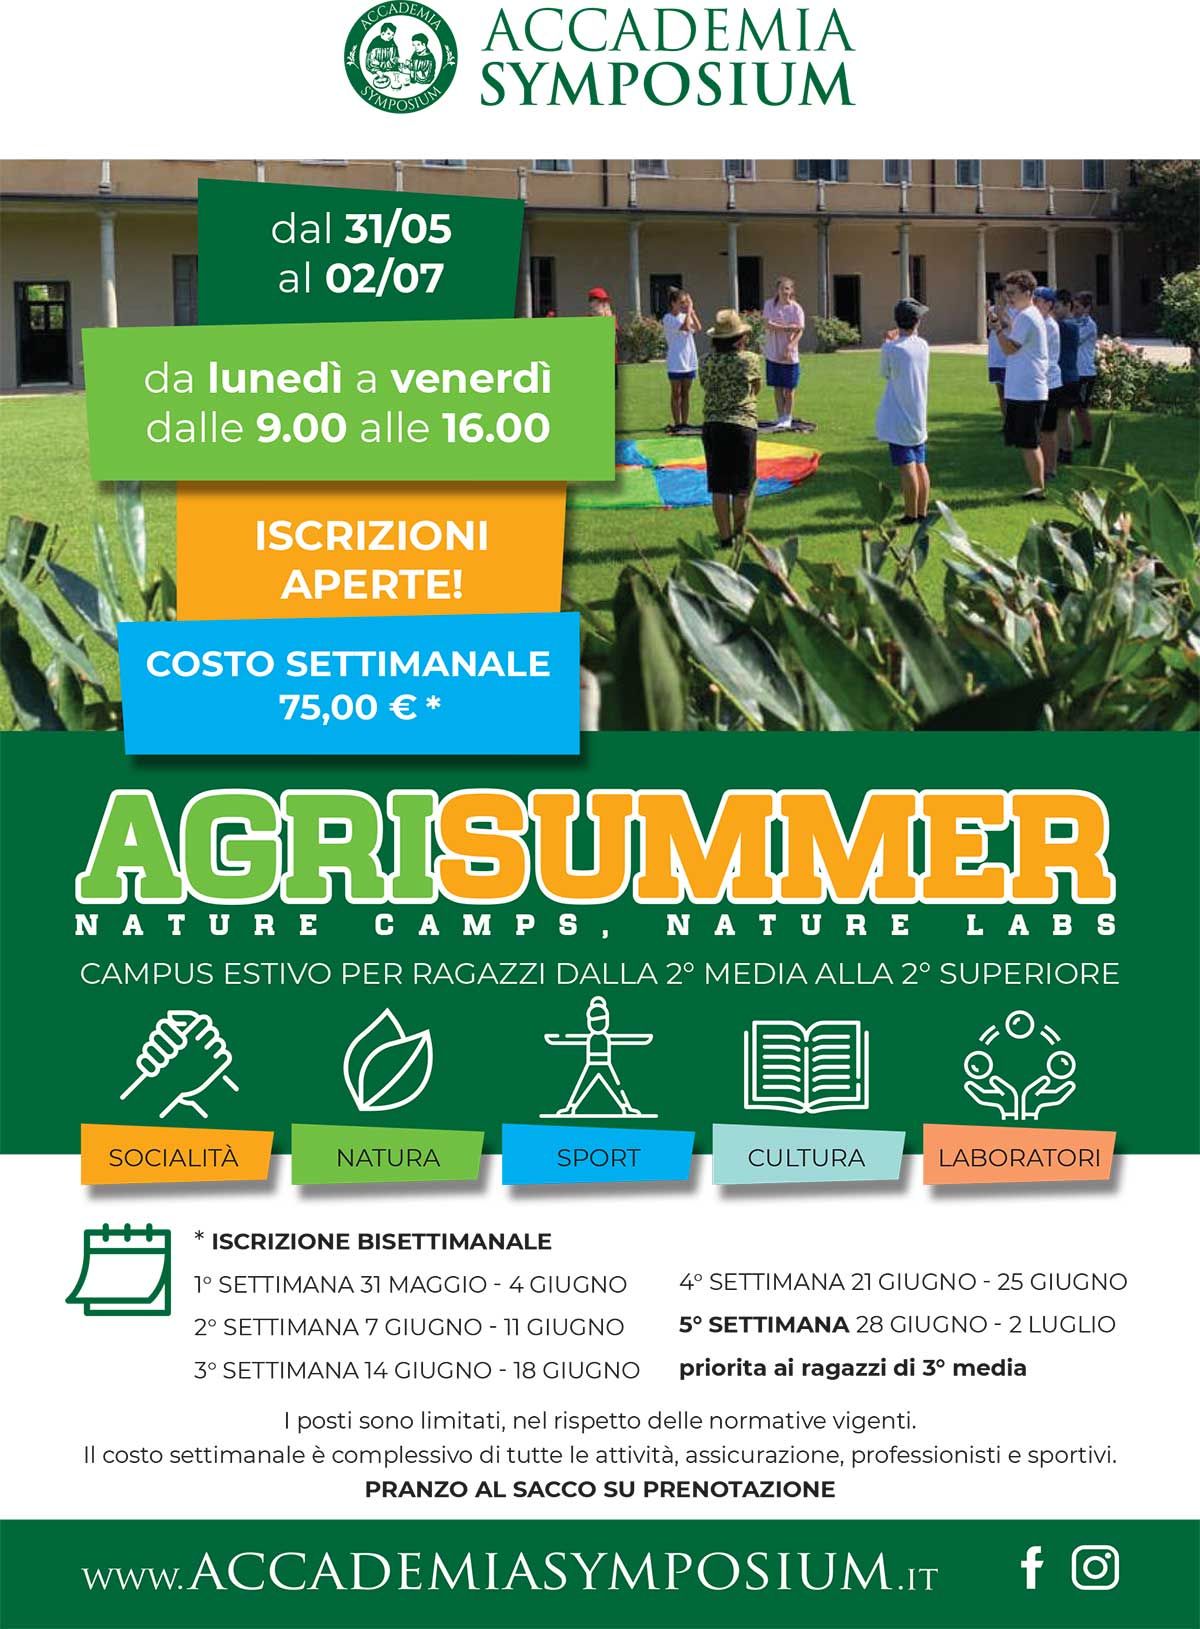 AgriSummer_Symposium-estate-2021-1